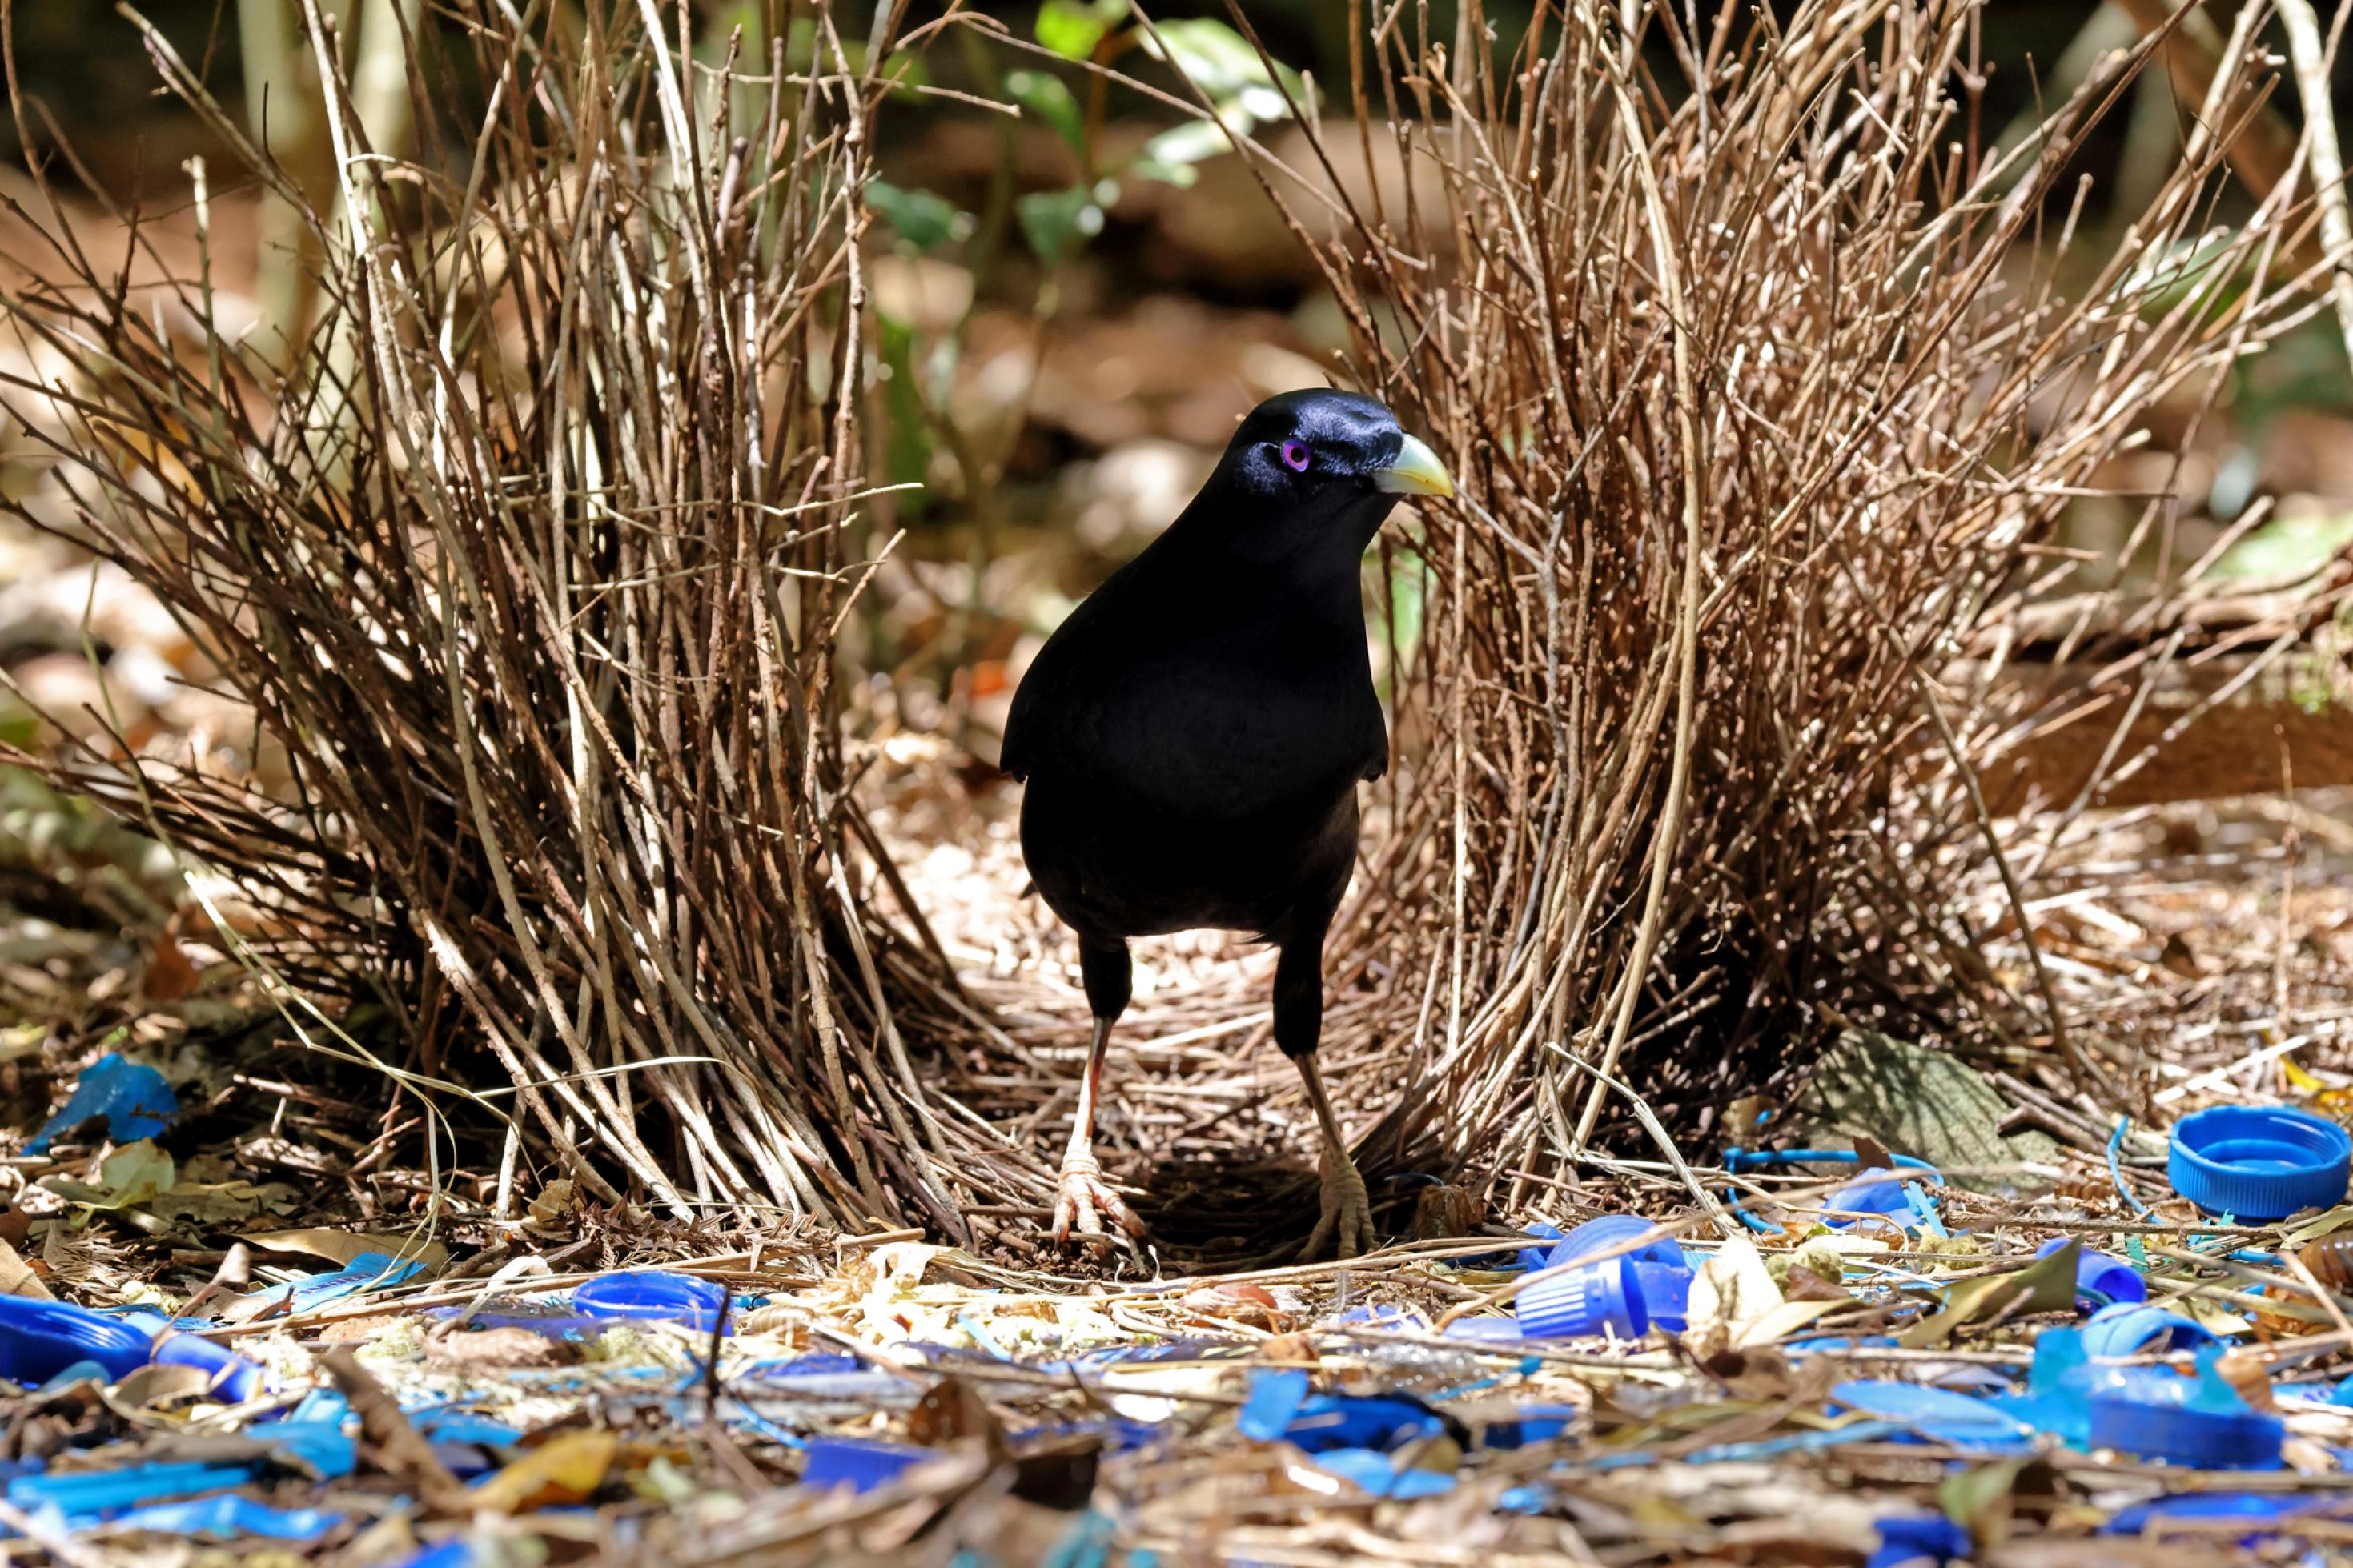 Ein dunkelblauer Vogel steht zwischen Grashalmen, blaue Flaschenverschlüsse liegen vor seinen Füßen